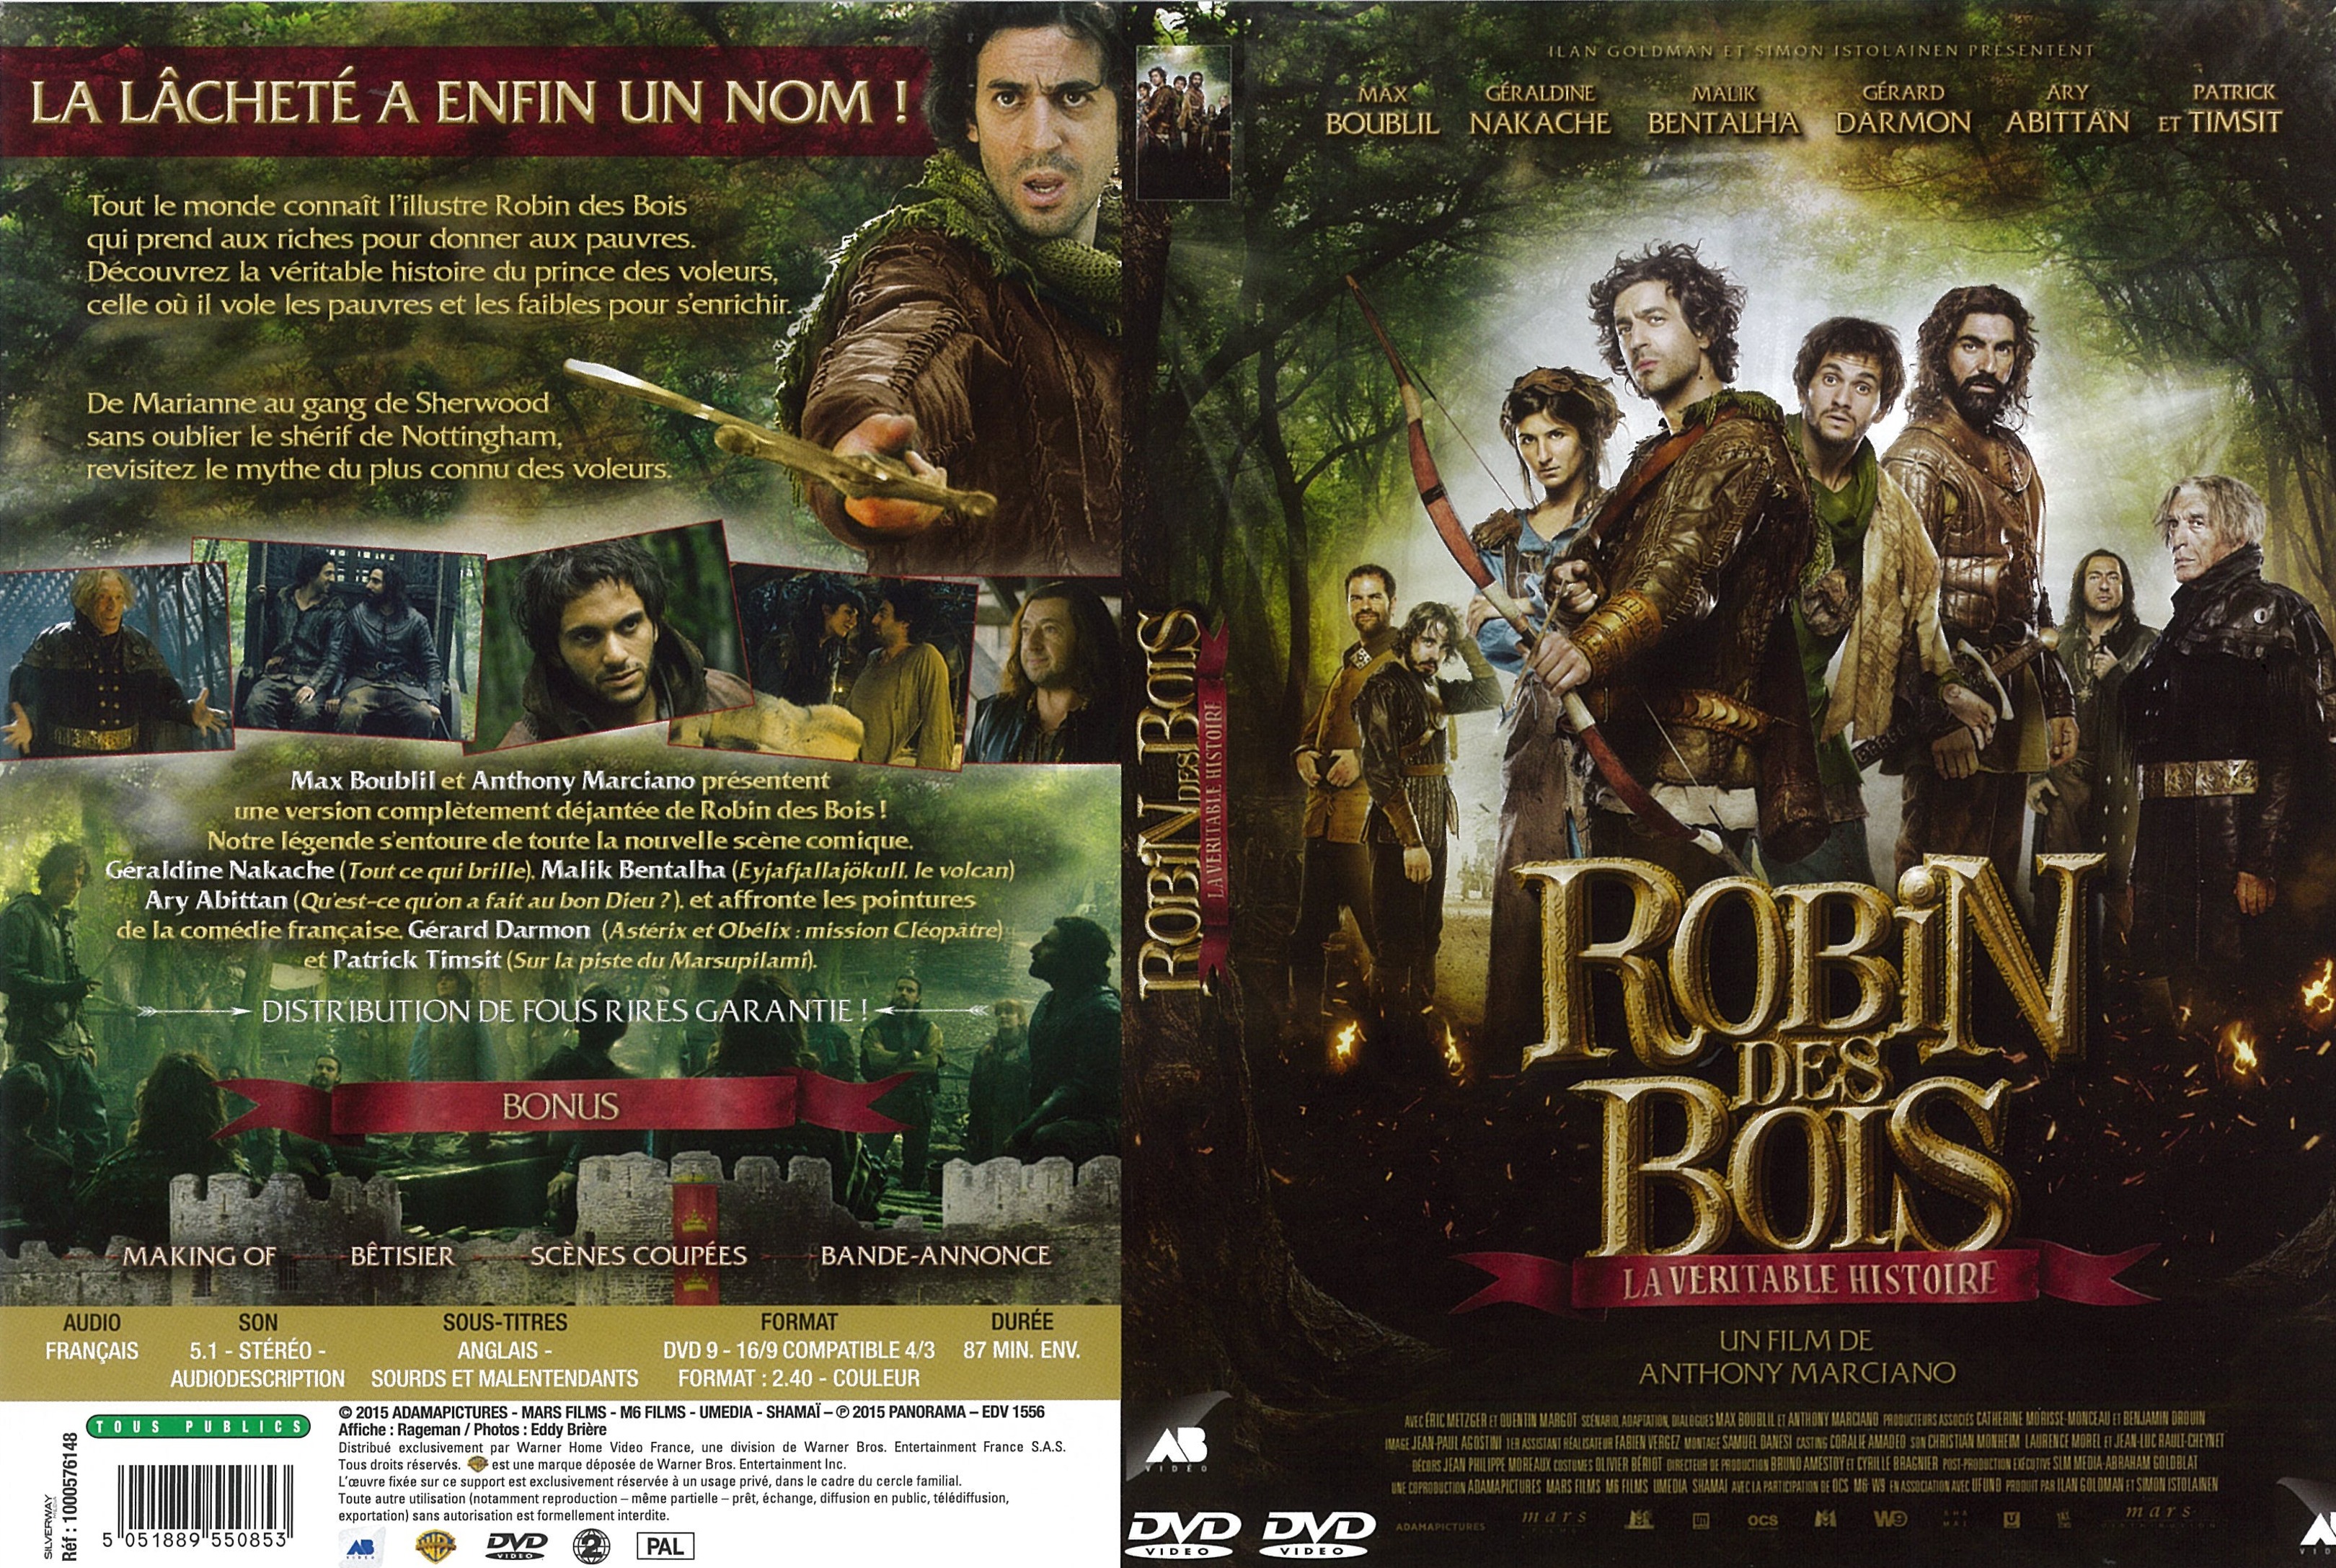 Jaquette DVD Robin des bois, la vritable histoire